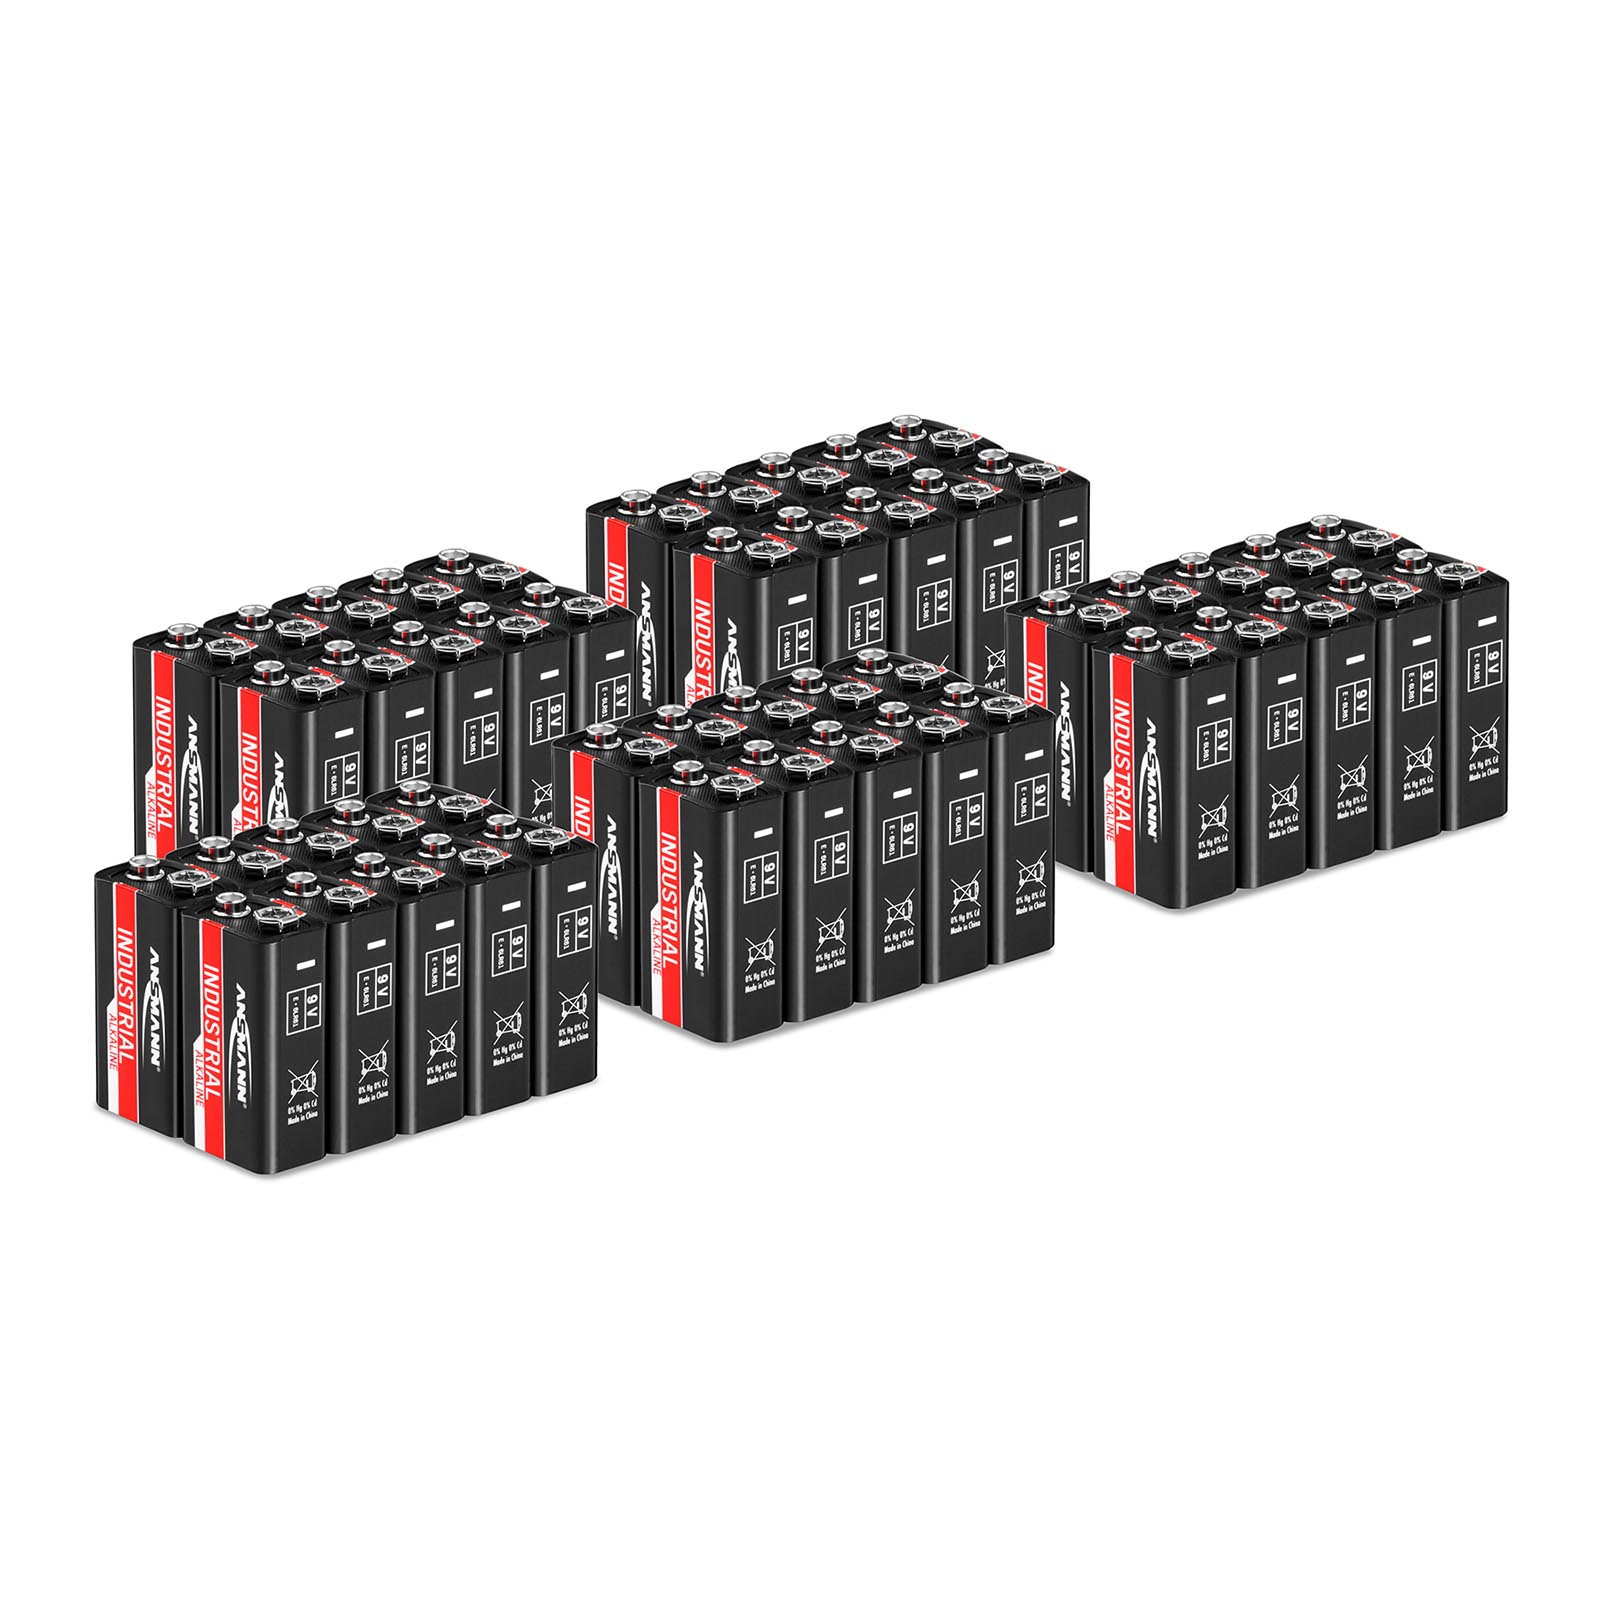 50 x 9 V batteries 6LR61 - Ansmann INDUSTRIAL Alkaline Batteries - 9 V